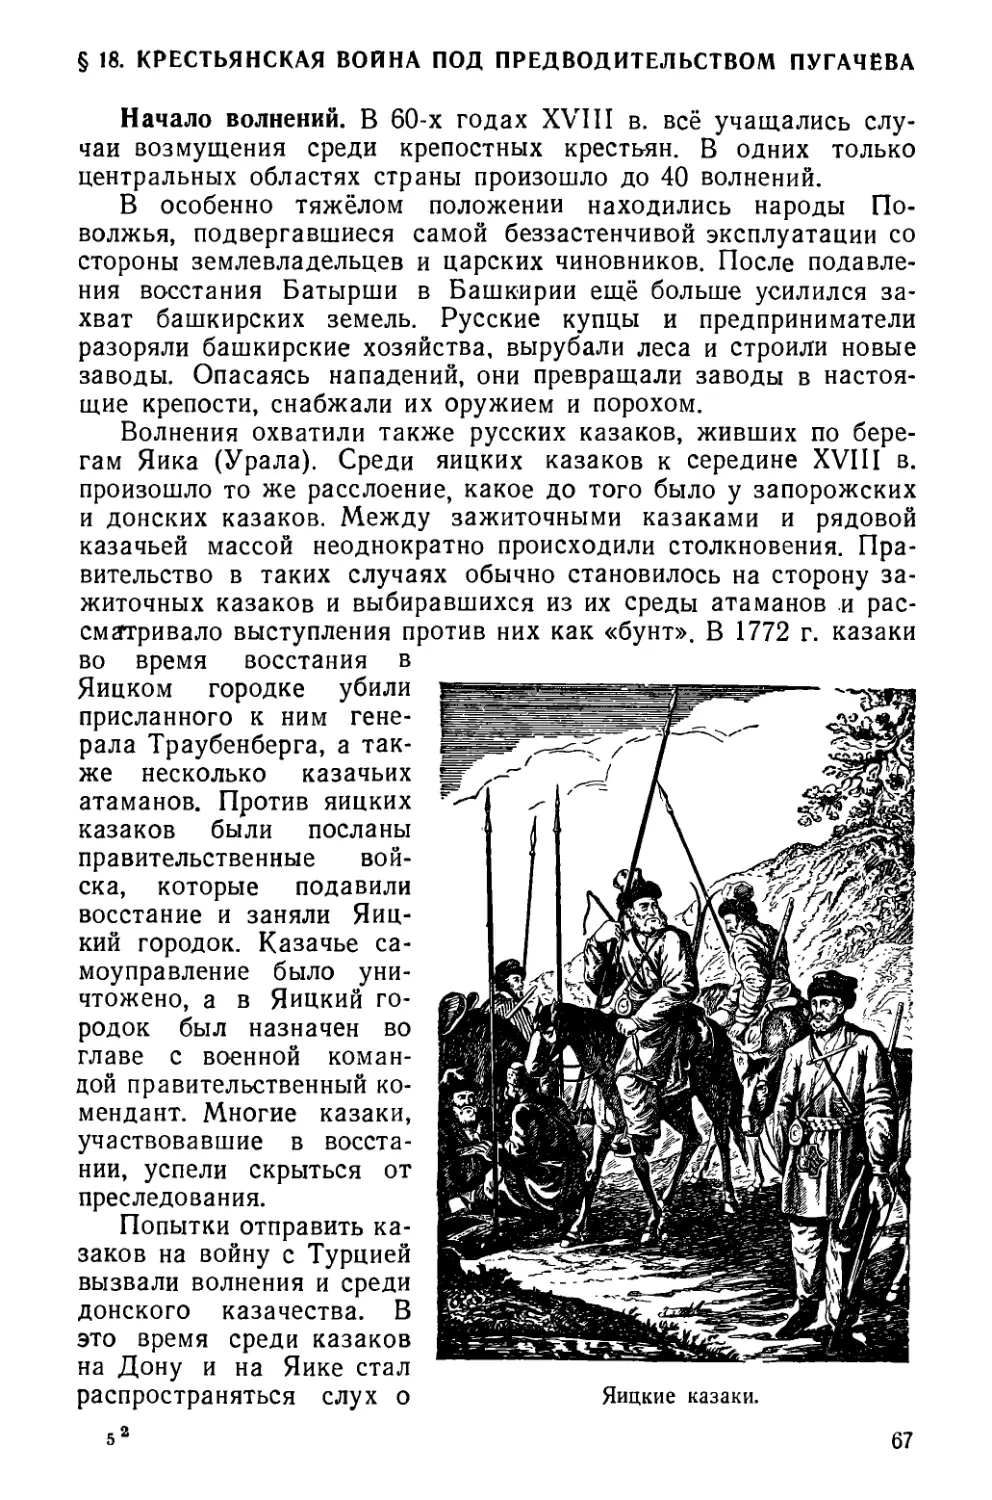 § 18. Крестьянская война под предводительством Пугачёва